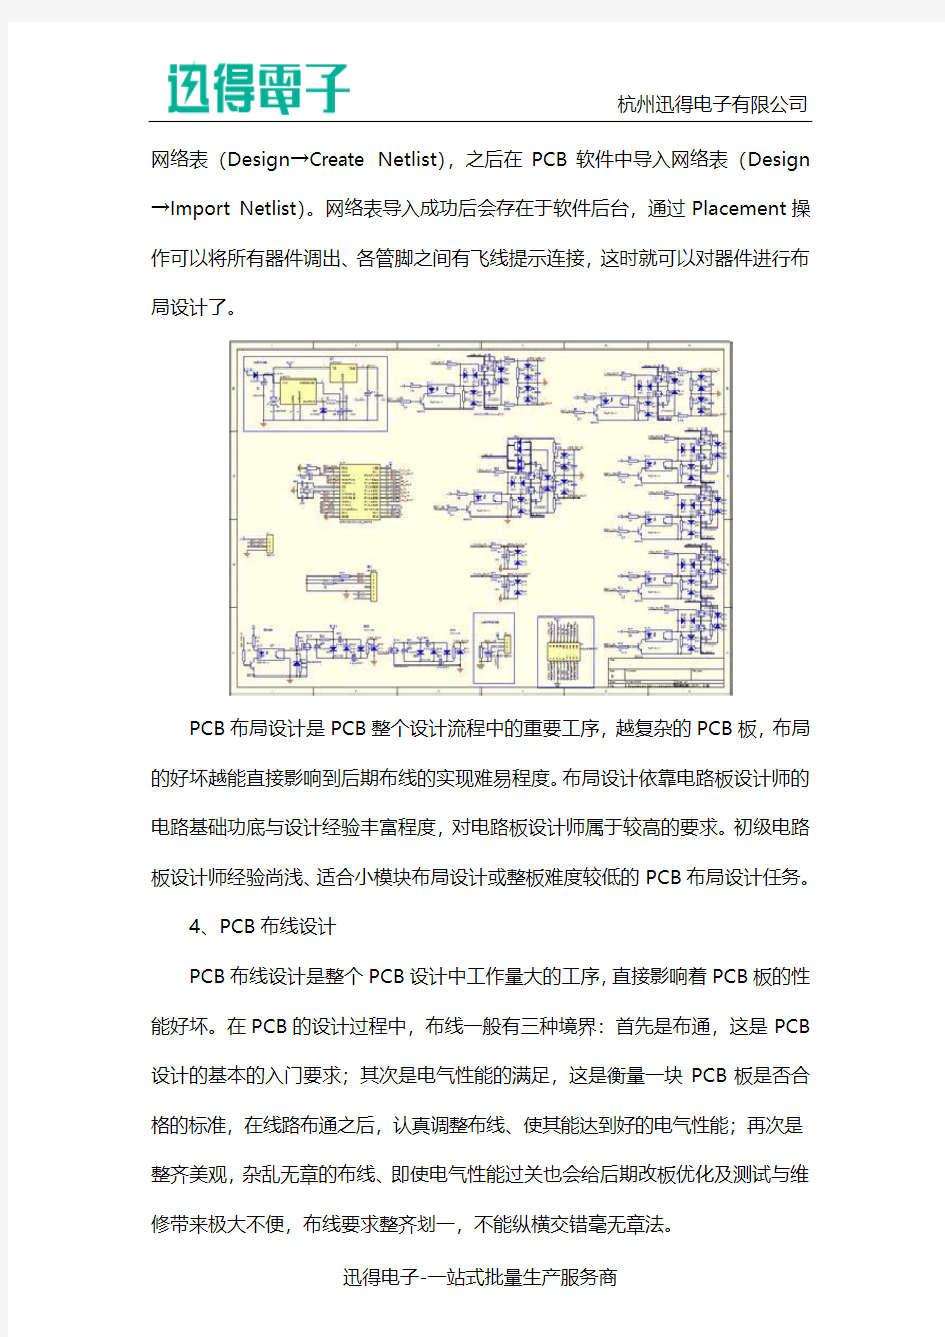 pcb电路板原理图的设计步骤